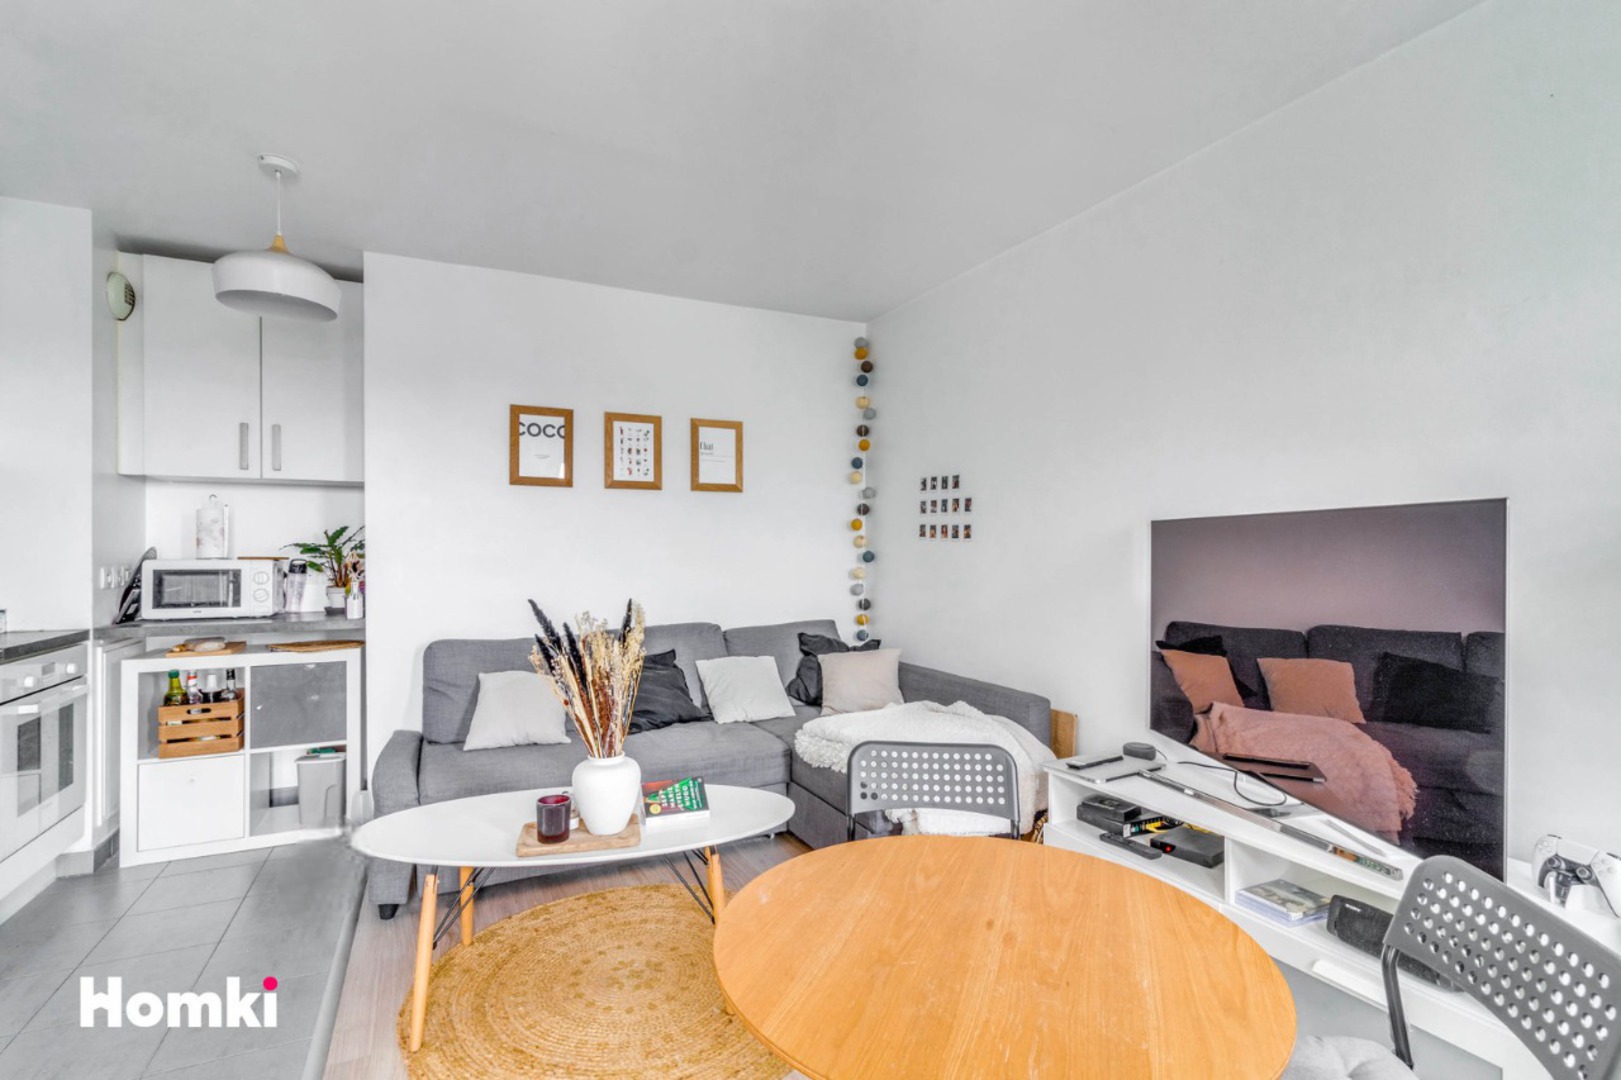 Homki - Vente Appartement  de 45.0 m² à Saint-André-lez-Lille 59350